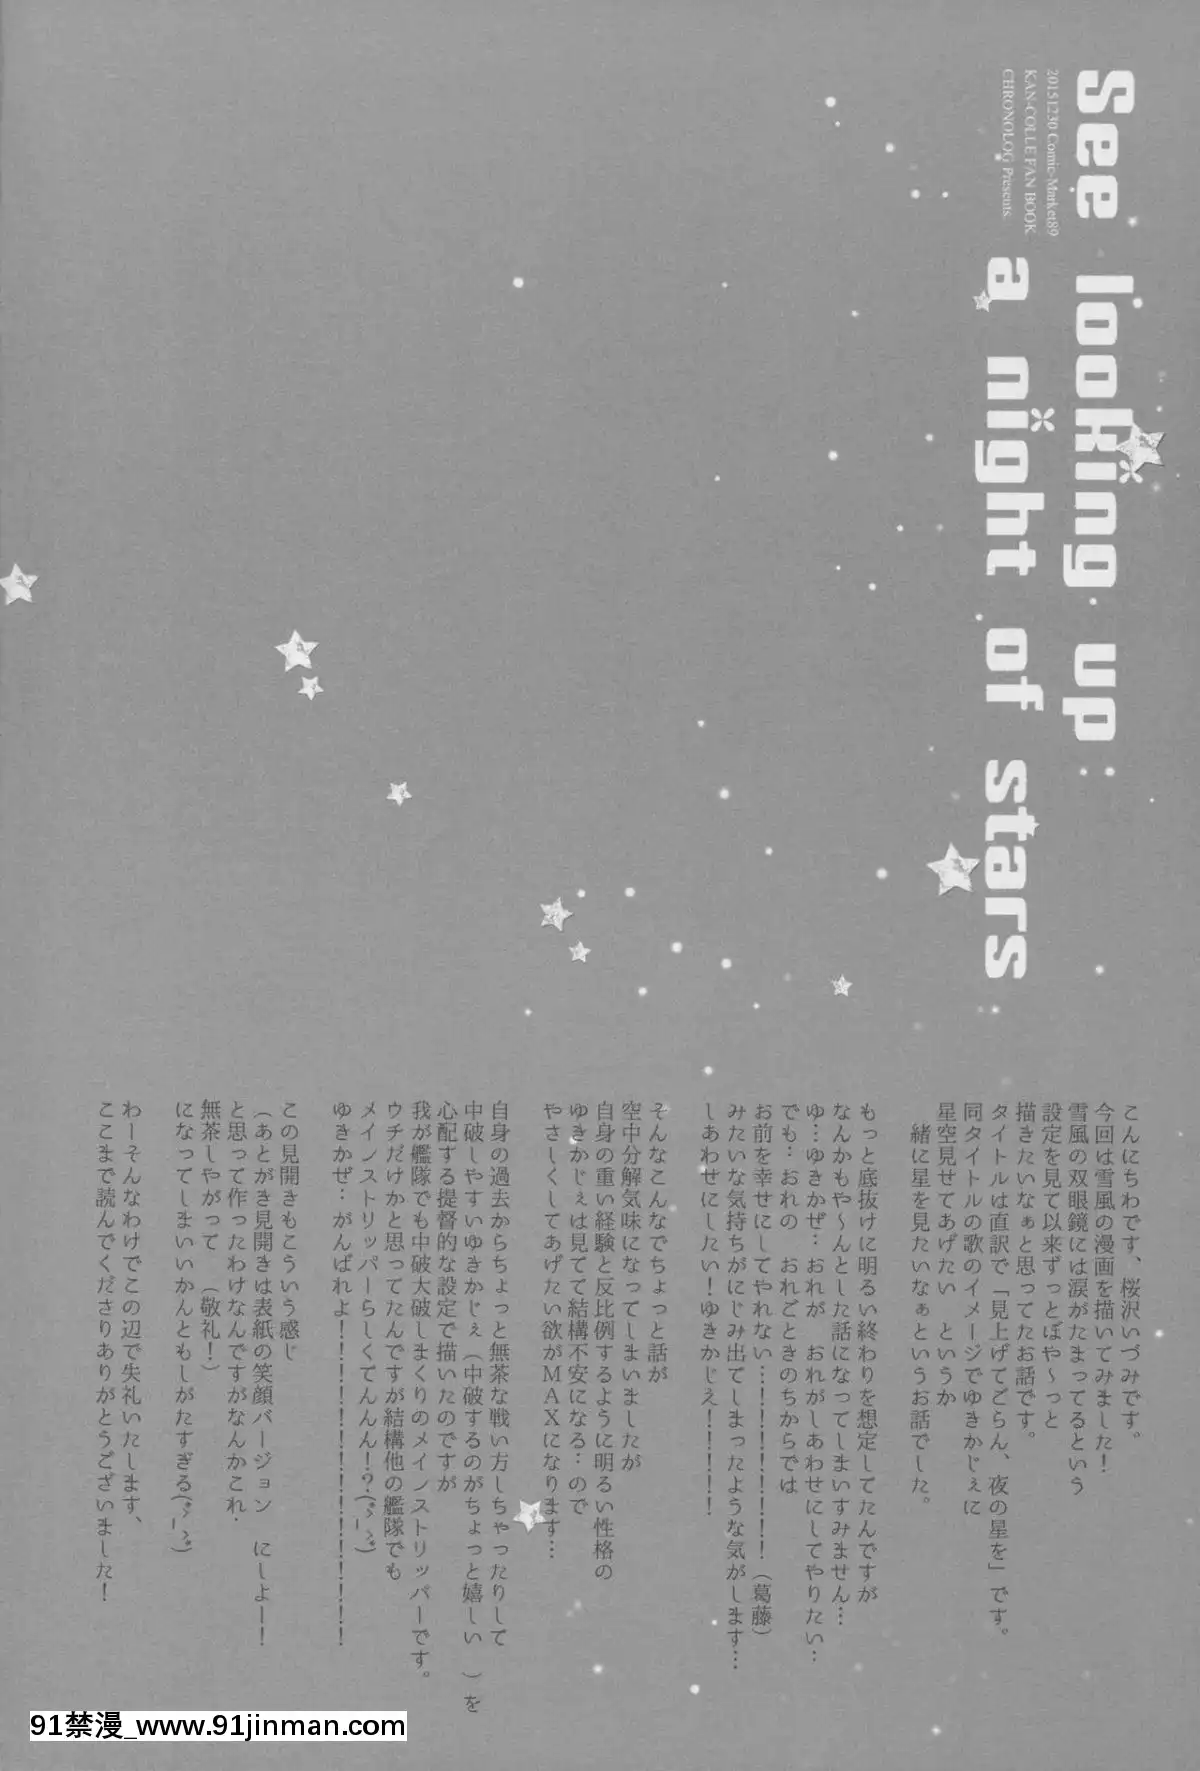 (C89)[CHRONOLOG(桜沢いづみ)]Seelookingupanightofstars(艦隊これくしょん 艦これ )   (C89) Seelookingupanightofstars (Kantai Collection KanColle)【chi gai dam đa ng ko che vietsub hentai】